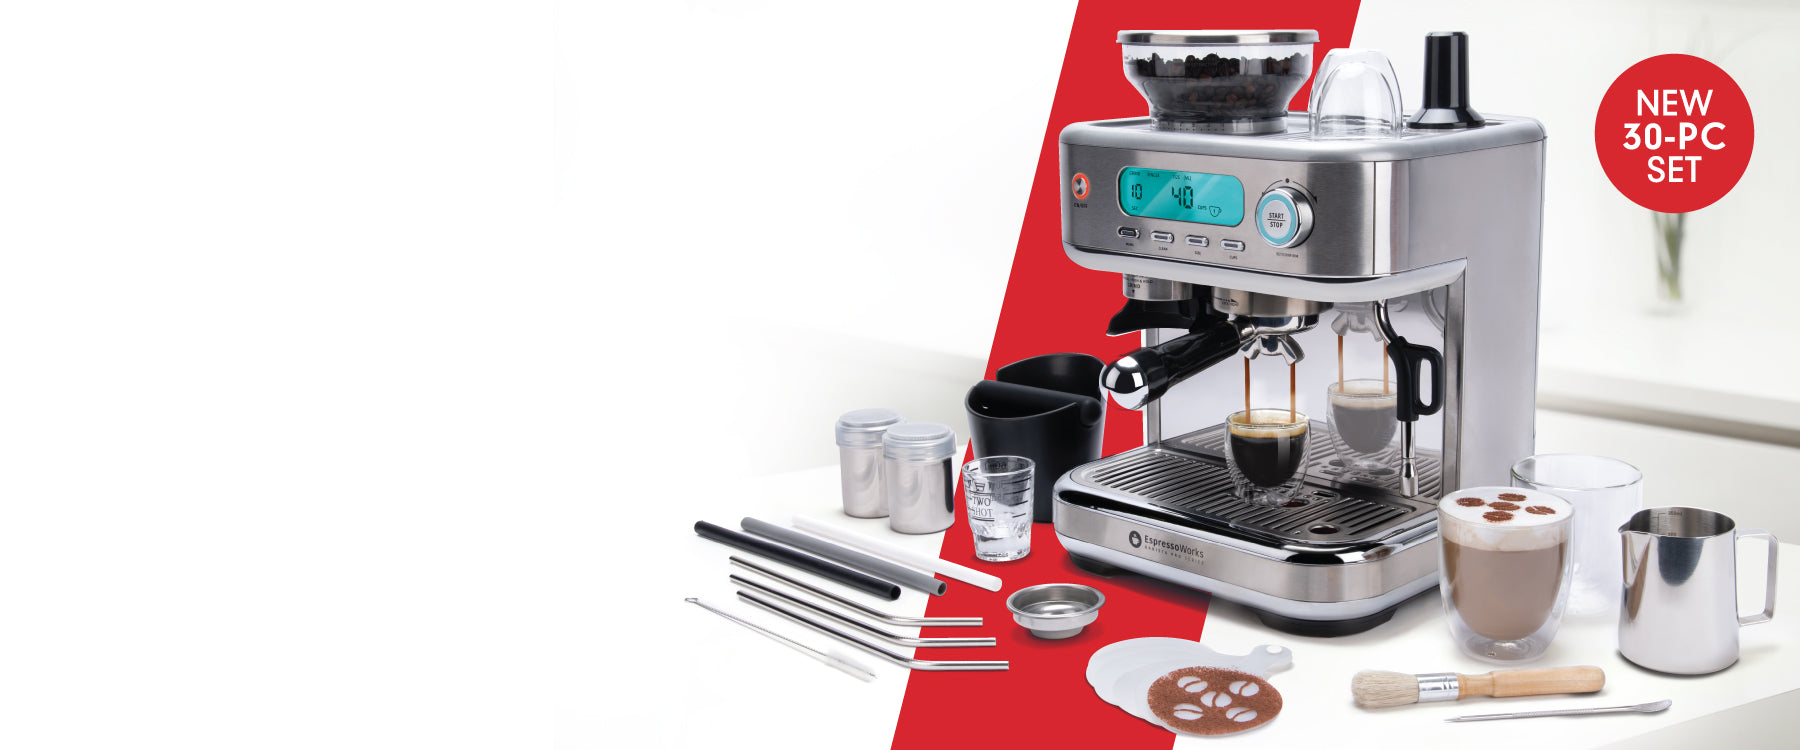 30-PC EspressoWorks Pro All-in-one Espresso & Cappuccino Coffee Machine Set